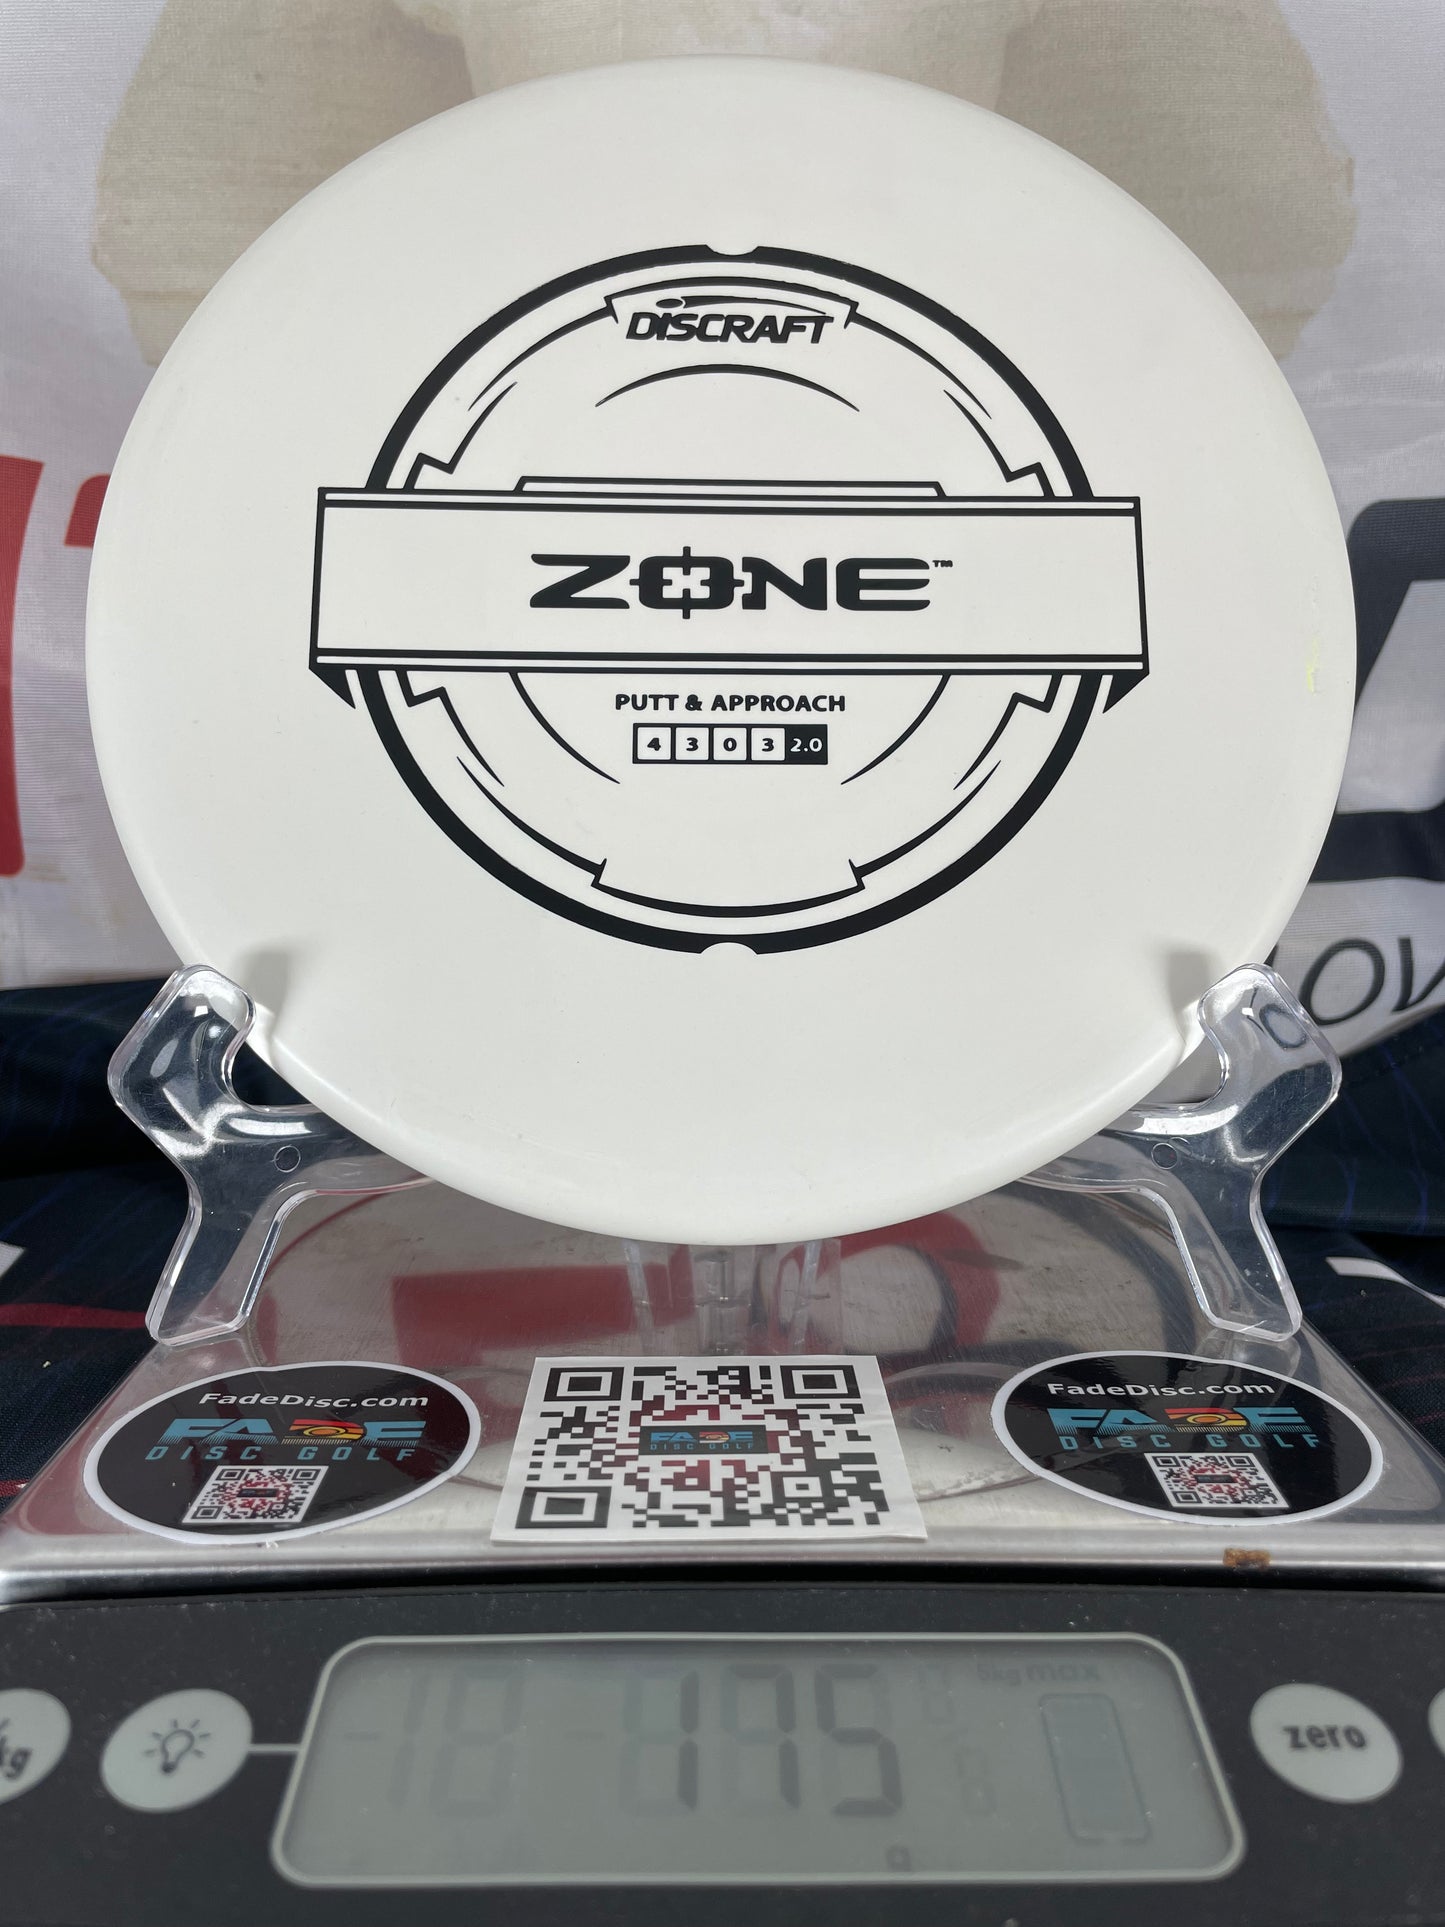 Discraft Zone Putter Line White w/ Black Foil 175g Putter